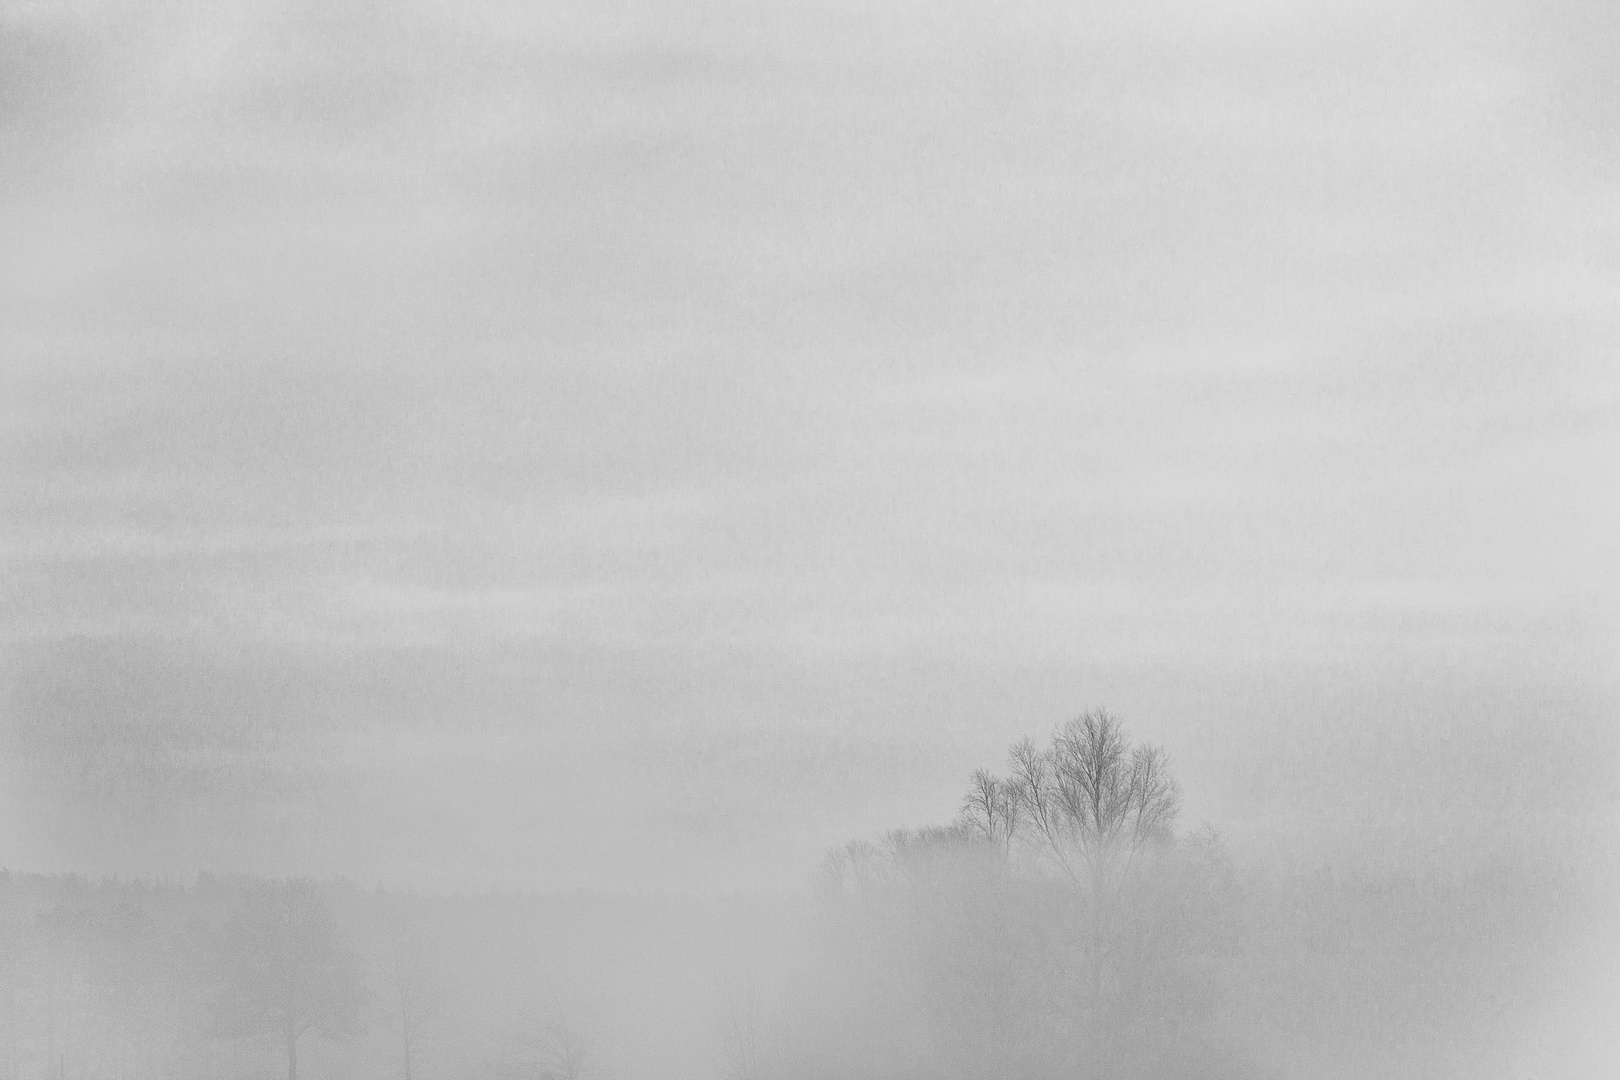 Baumkrone im Nebel